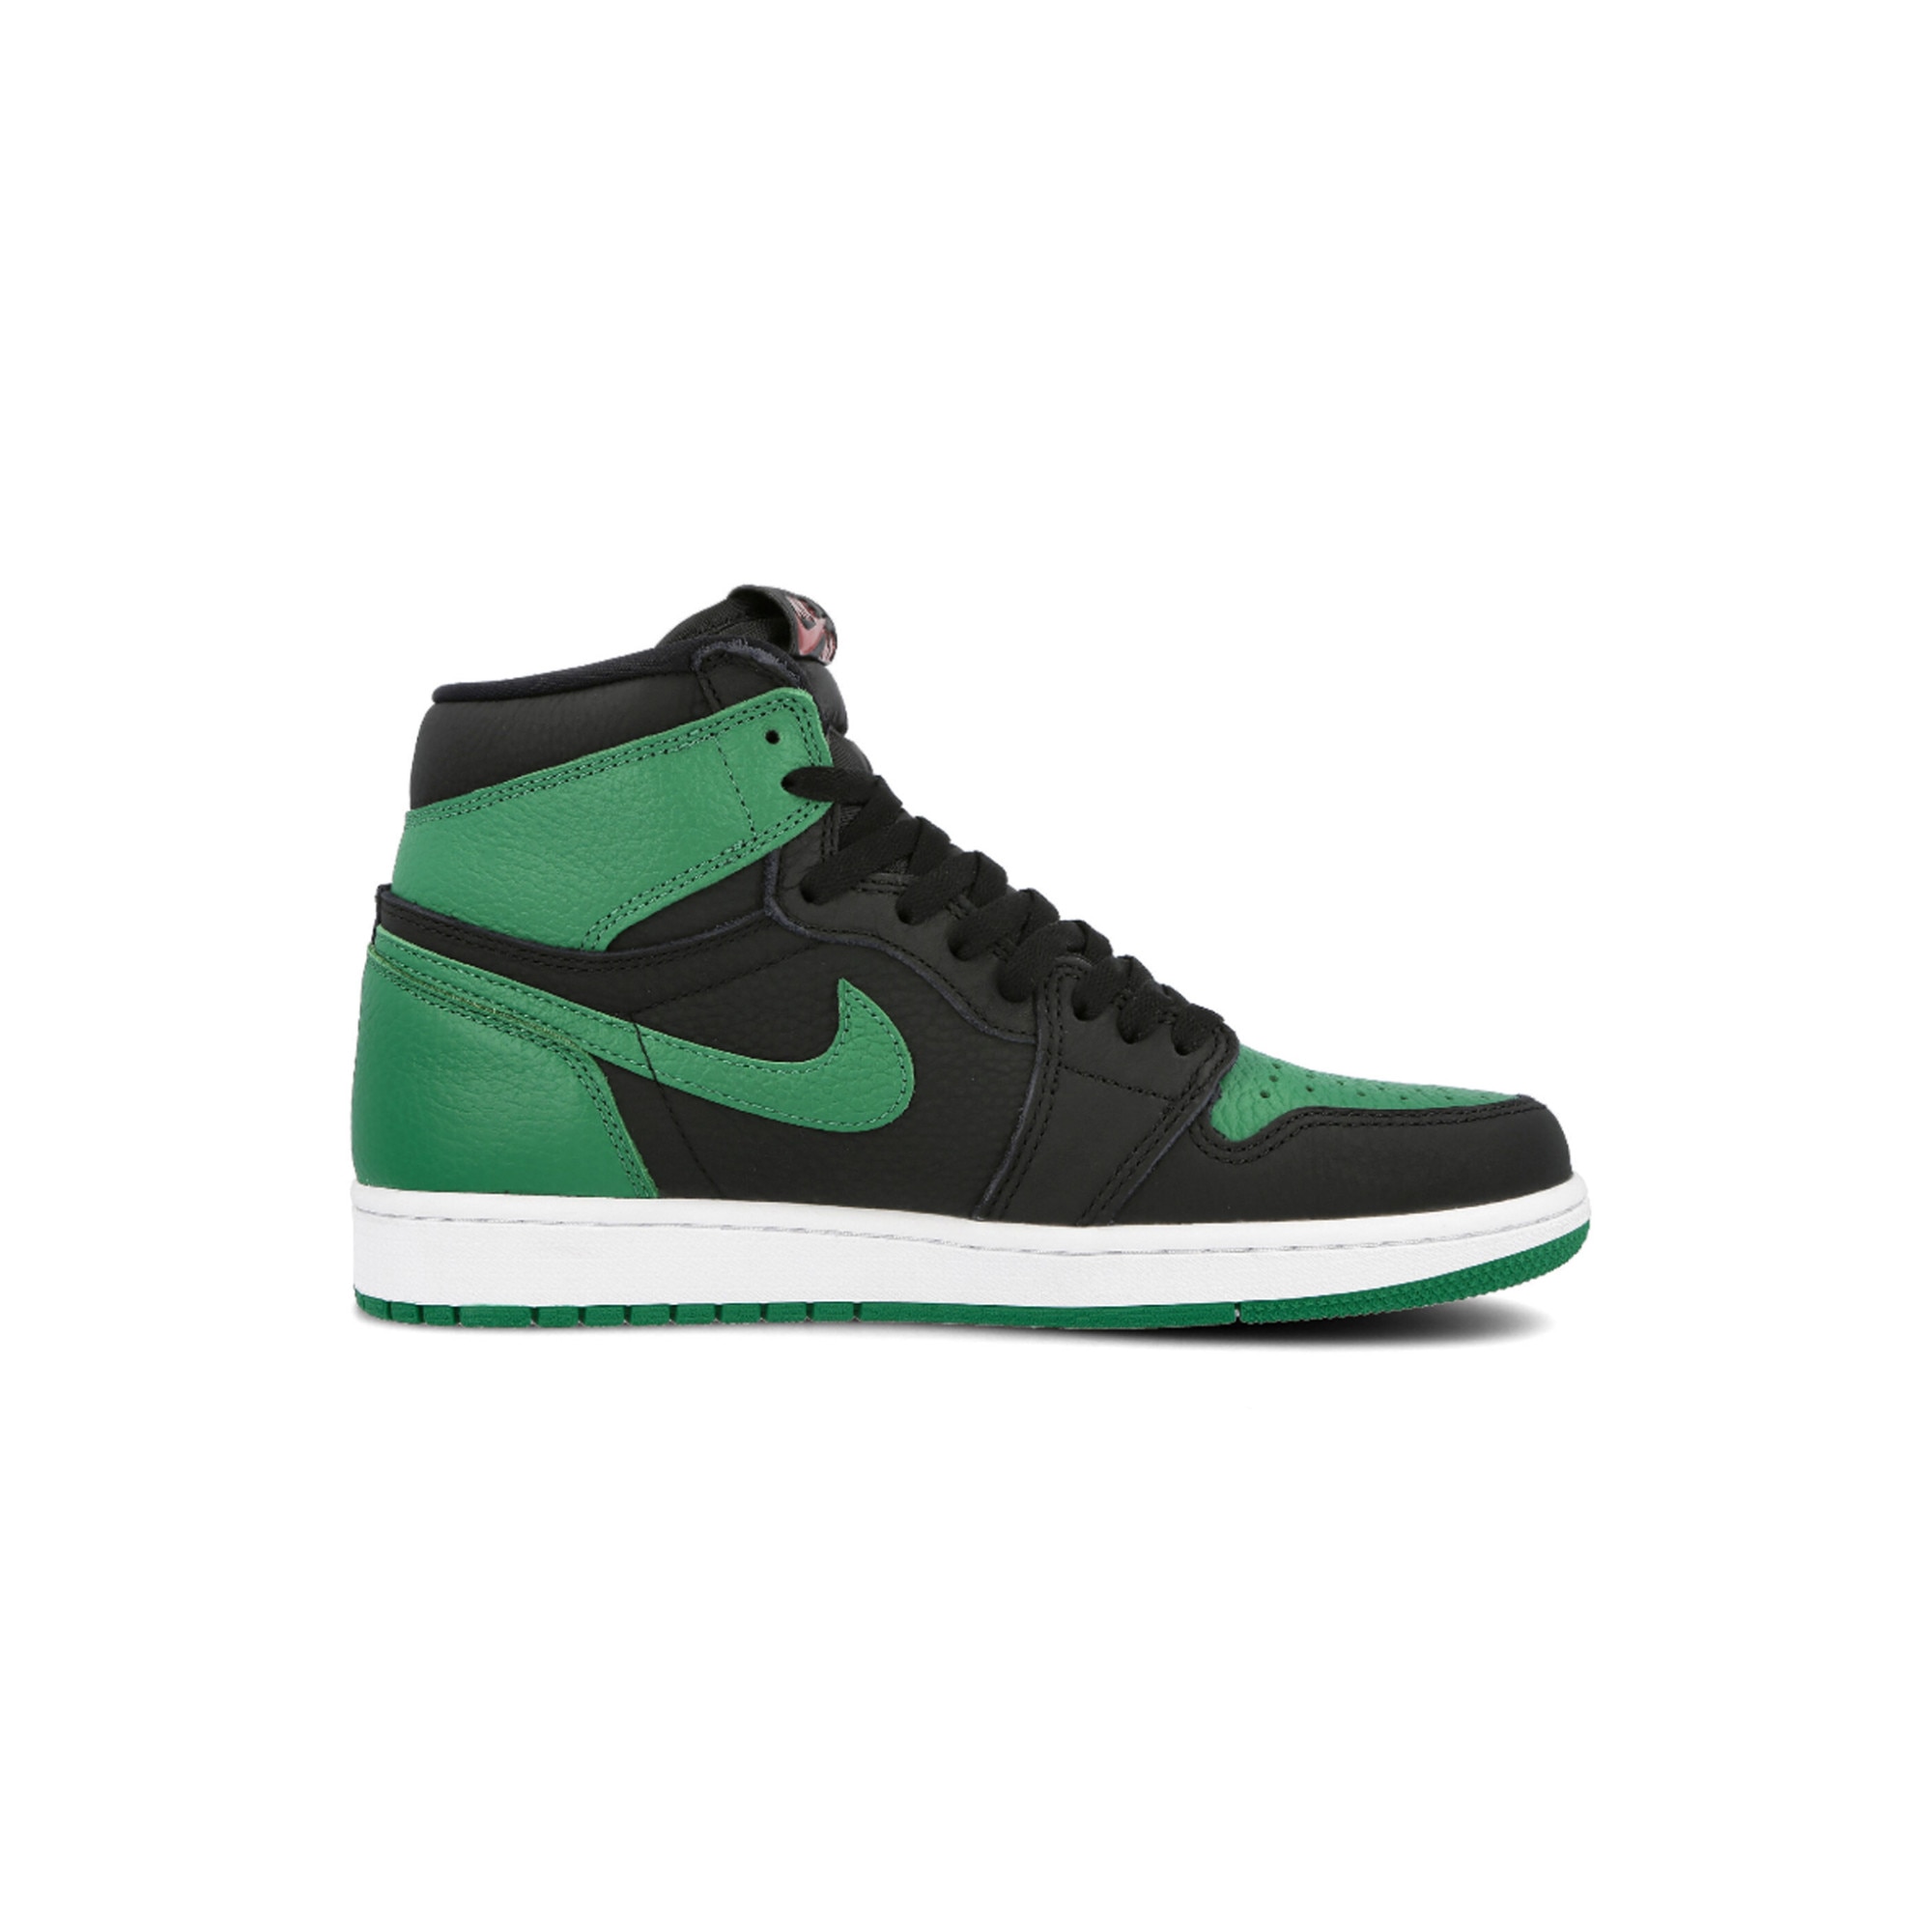 green and black air jordan 1s